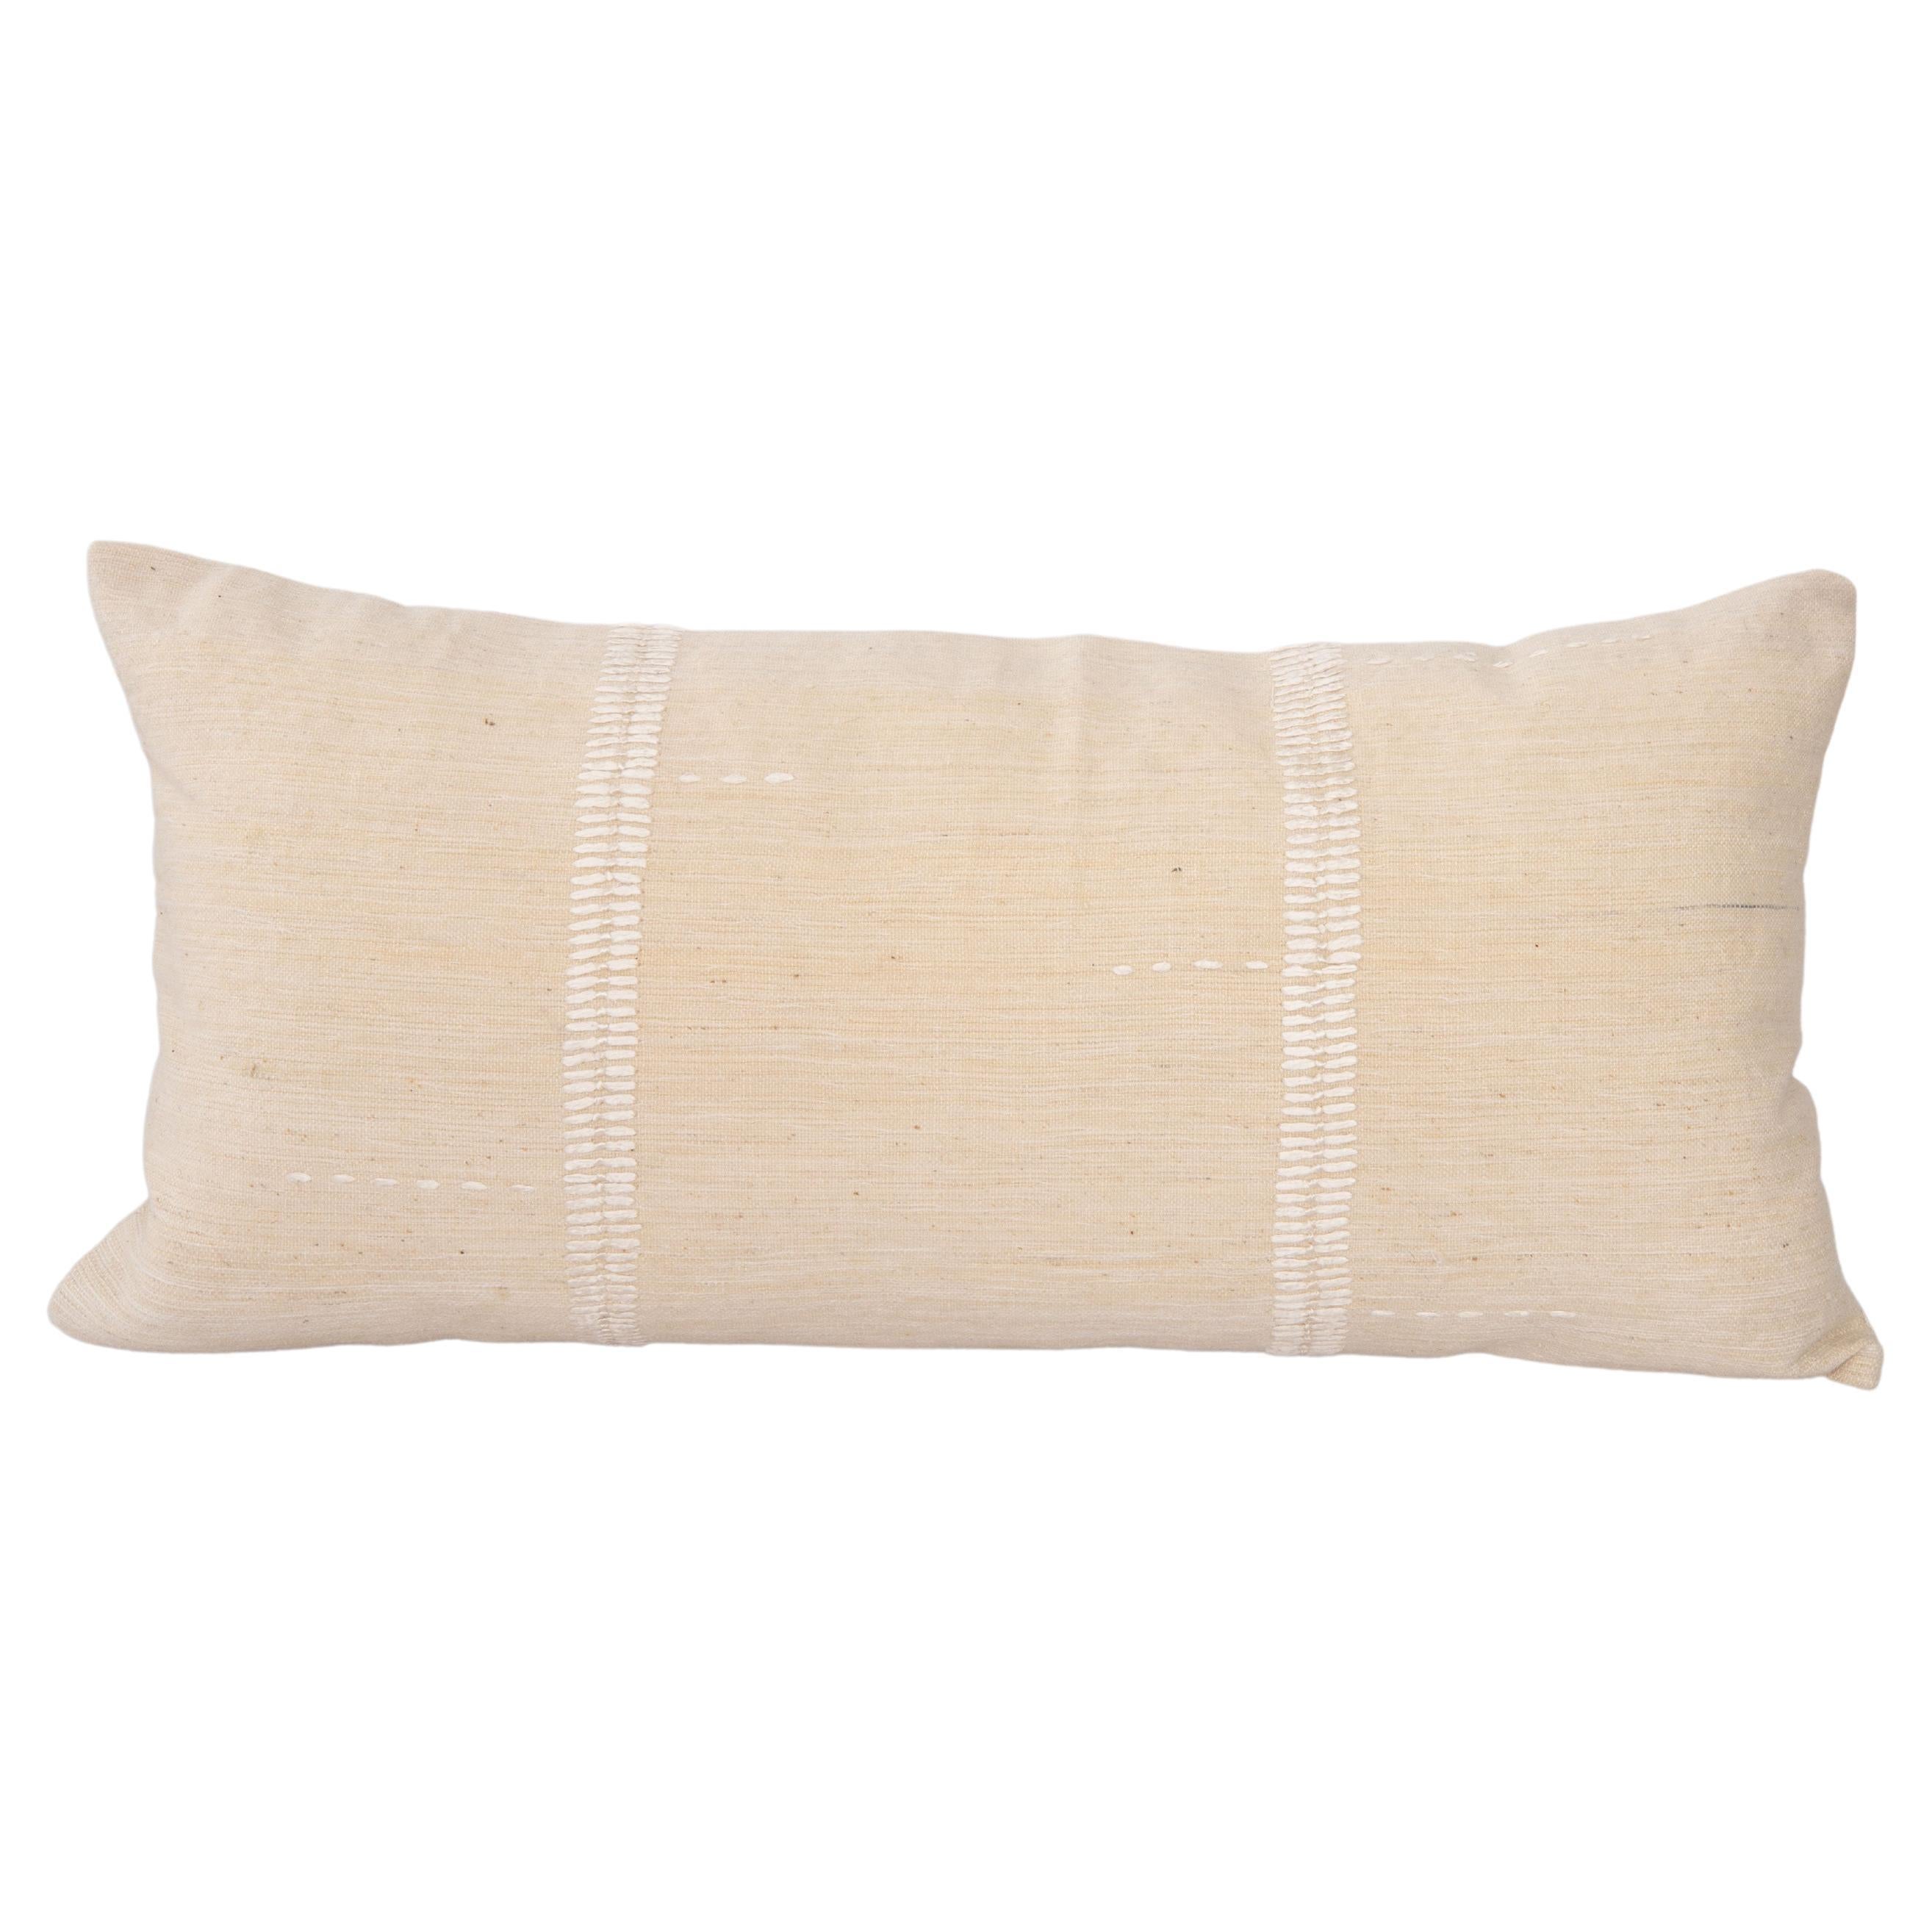 Mid 20th C. Pillow Cover Made from Vintage Anatolian Covers (housse de coussin du milieu du 20e siècle fabriquée à partir de couvertures anatoliennes d'époque)